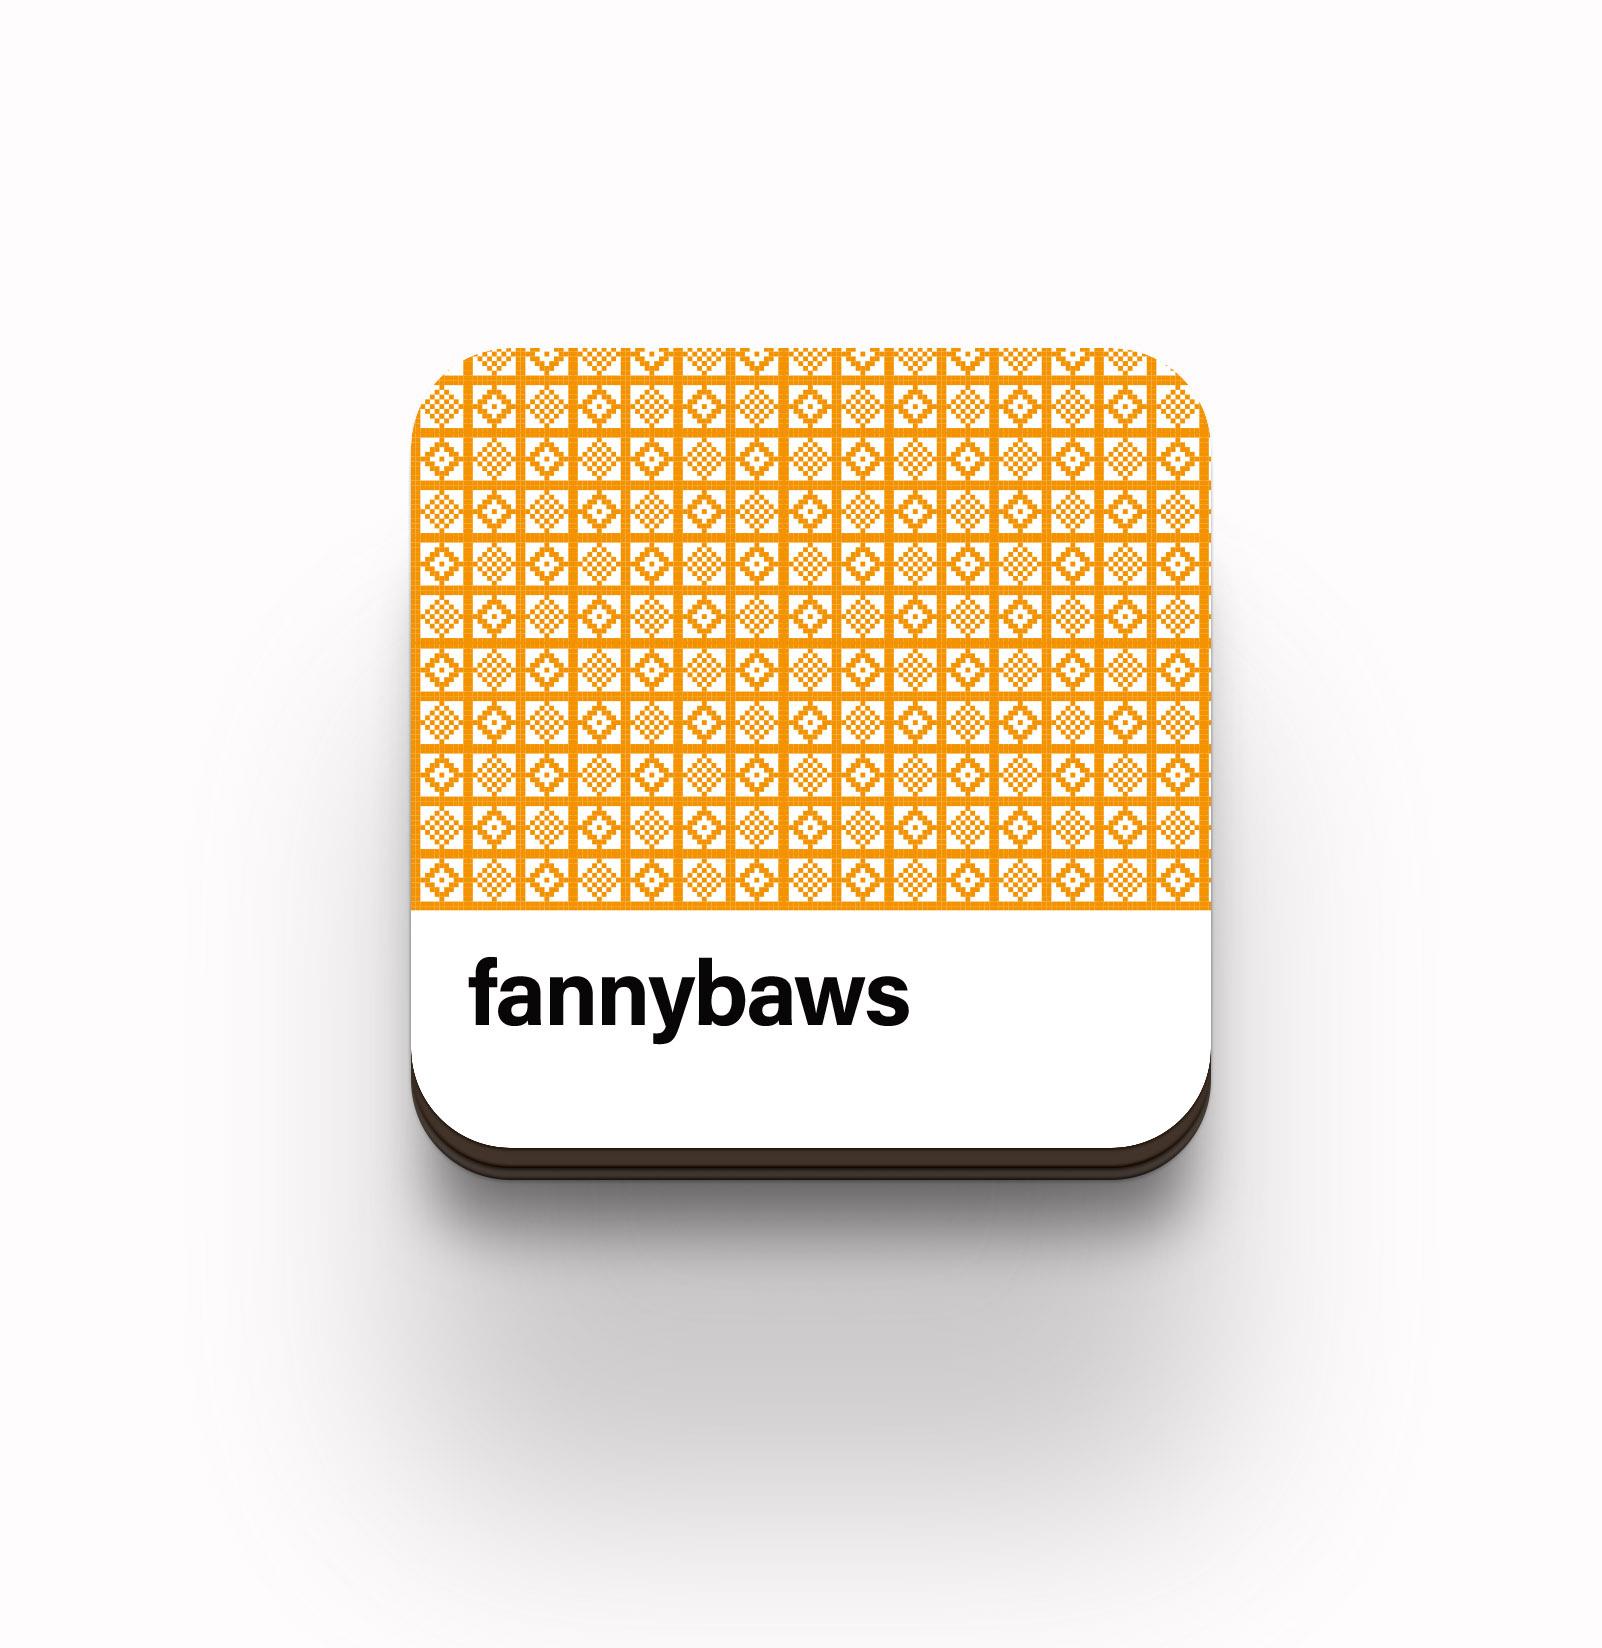 fannybaws coaster